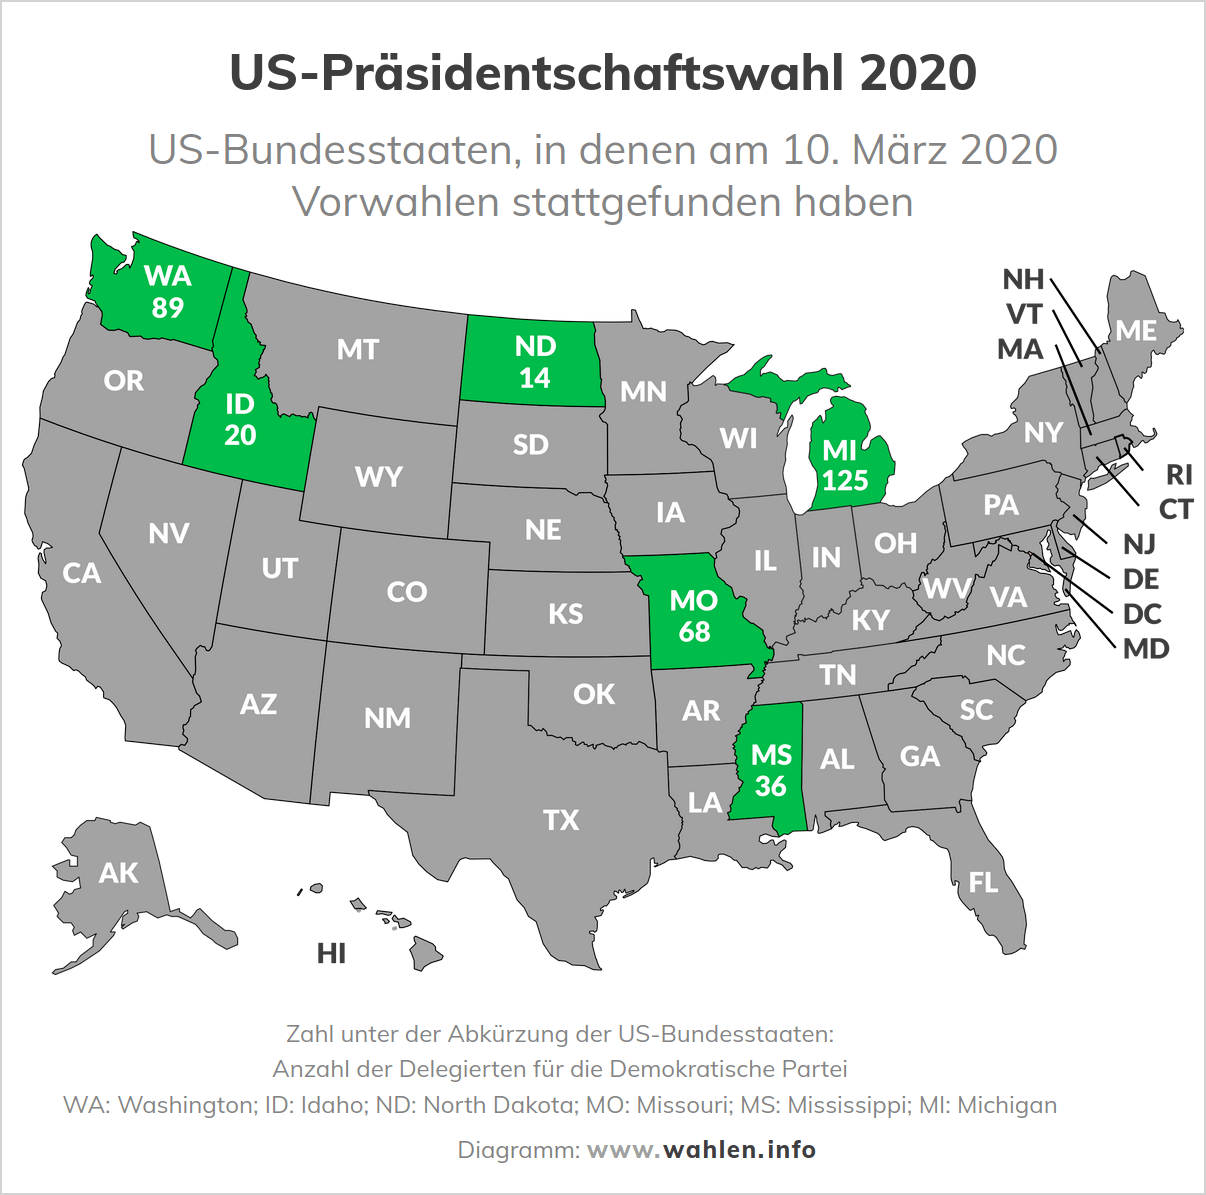 Präsidentschaftswahl in den USA - Vorwahlen der Demokraten im März 2020